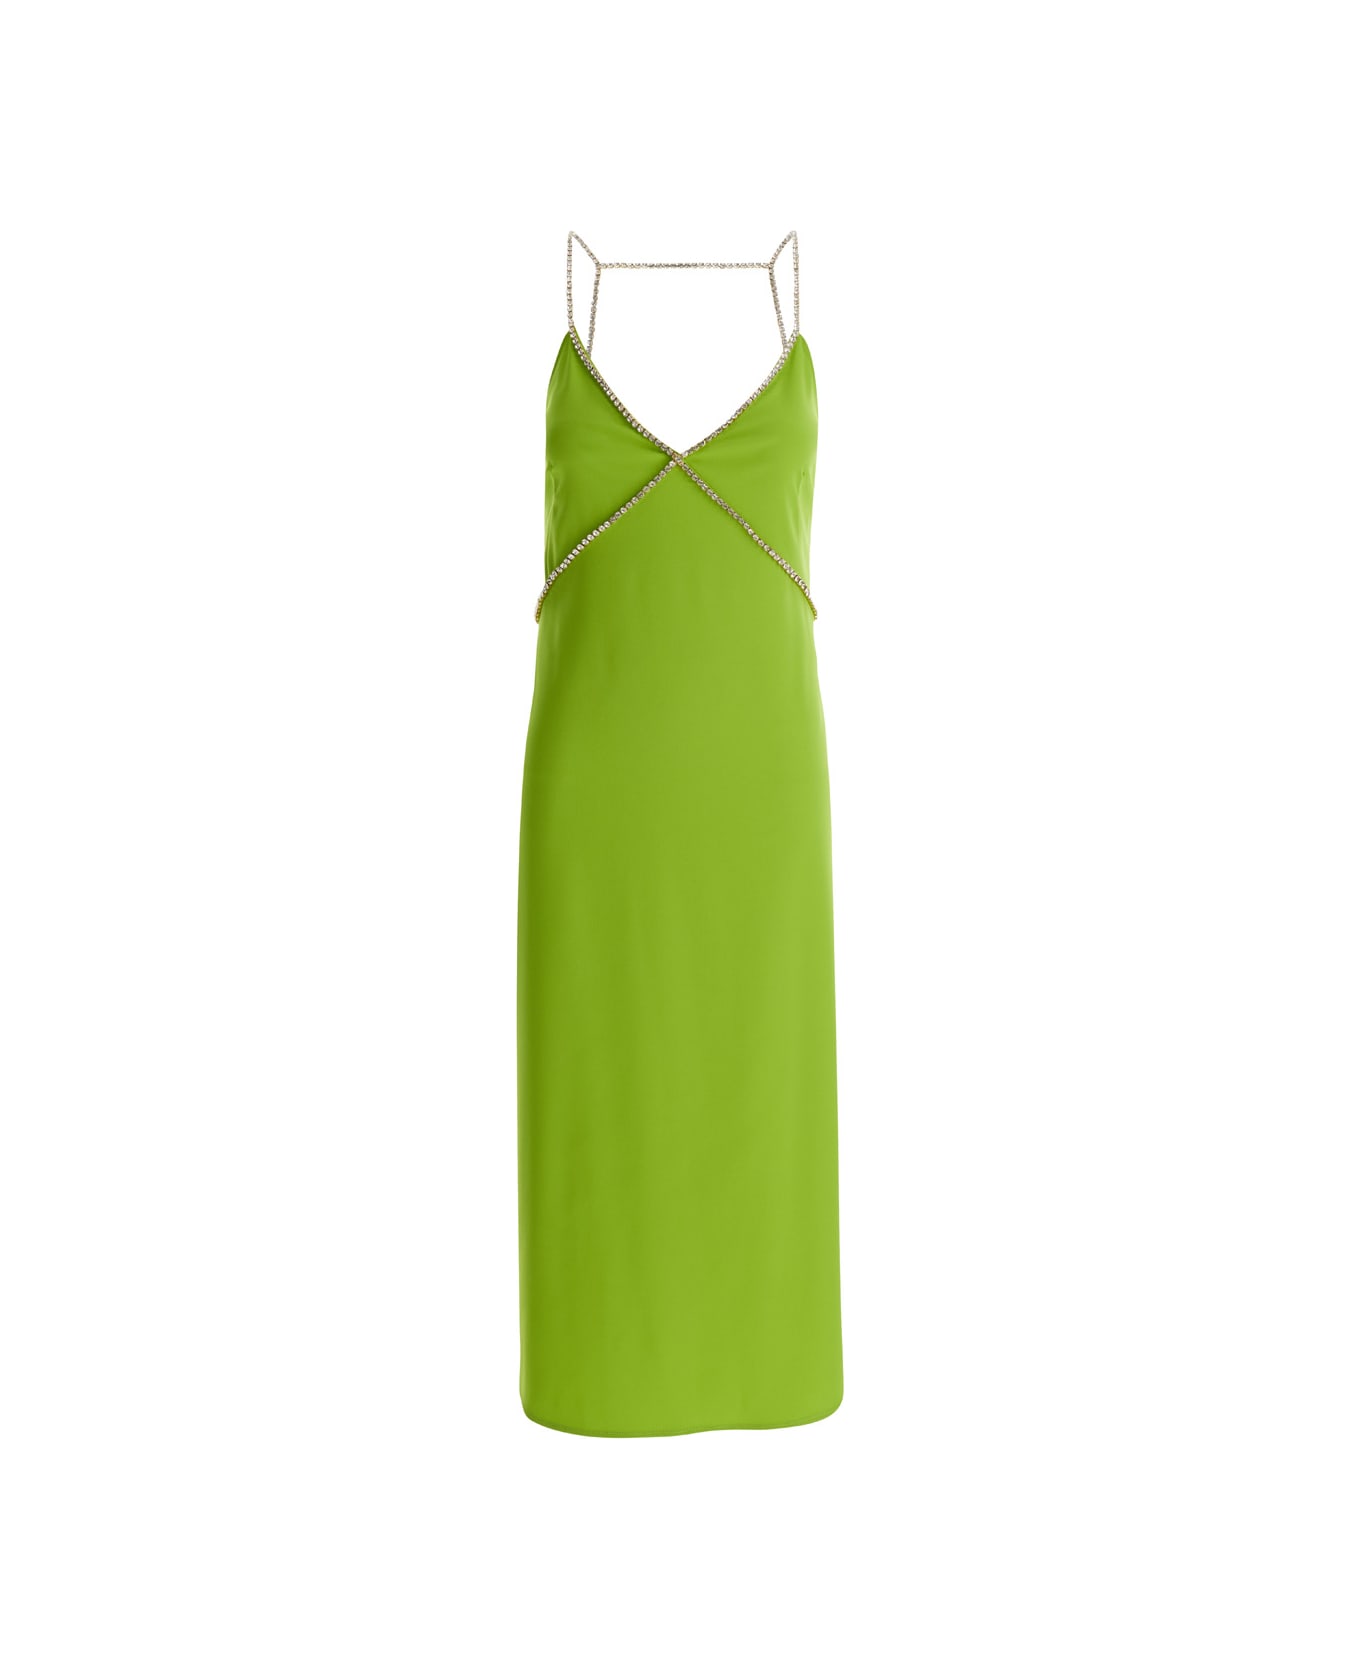 Liu-Jo Avocado Green Midi Dress With Rhinestone Straps In Crepe Fabric Woman Liu-Jo - GREEN